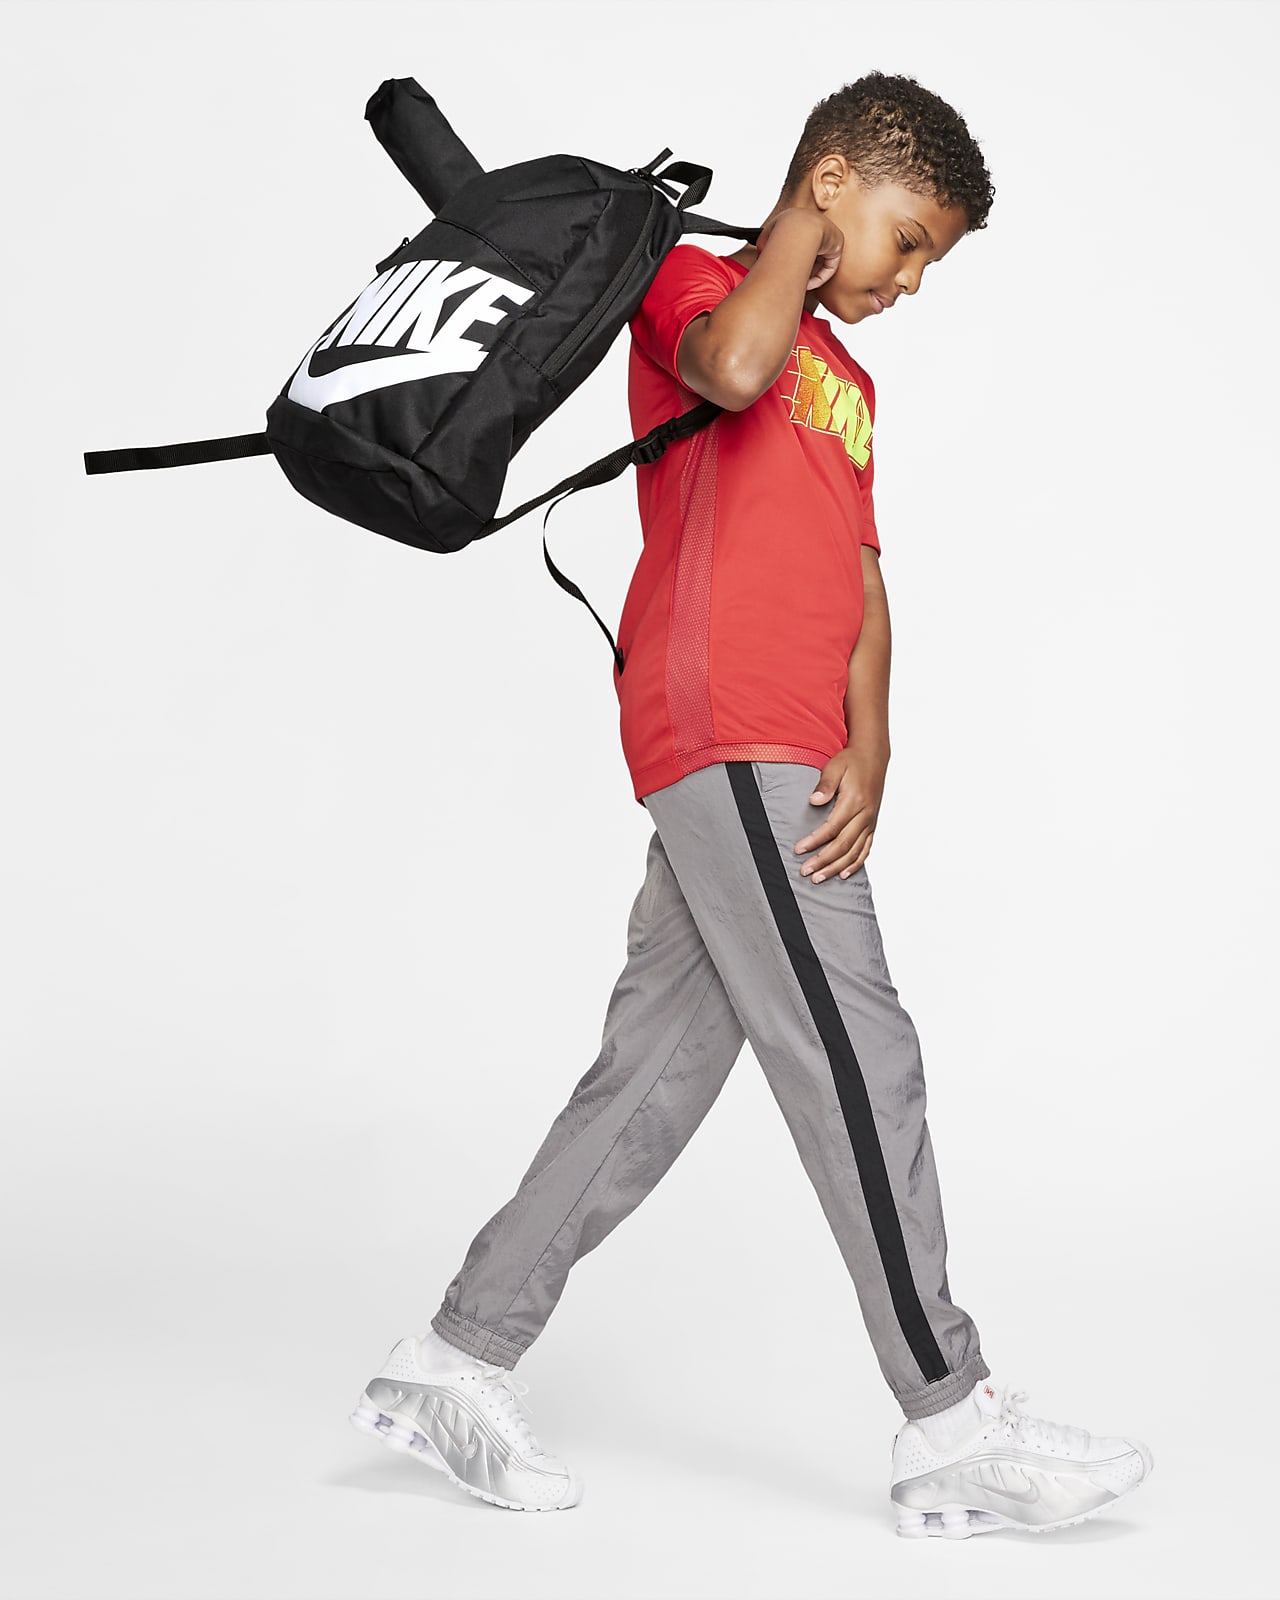 Volver a disparar escotilla realeza Nike Mochila - Niño/a (20 L). Nike ES